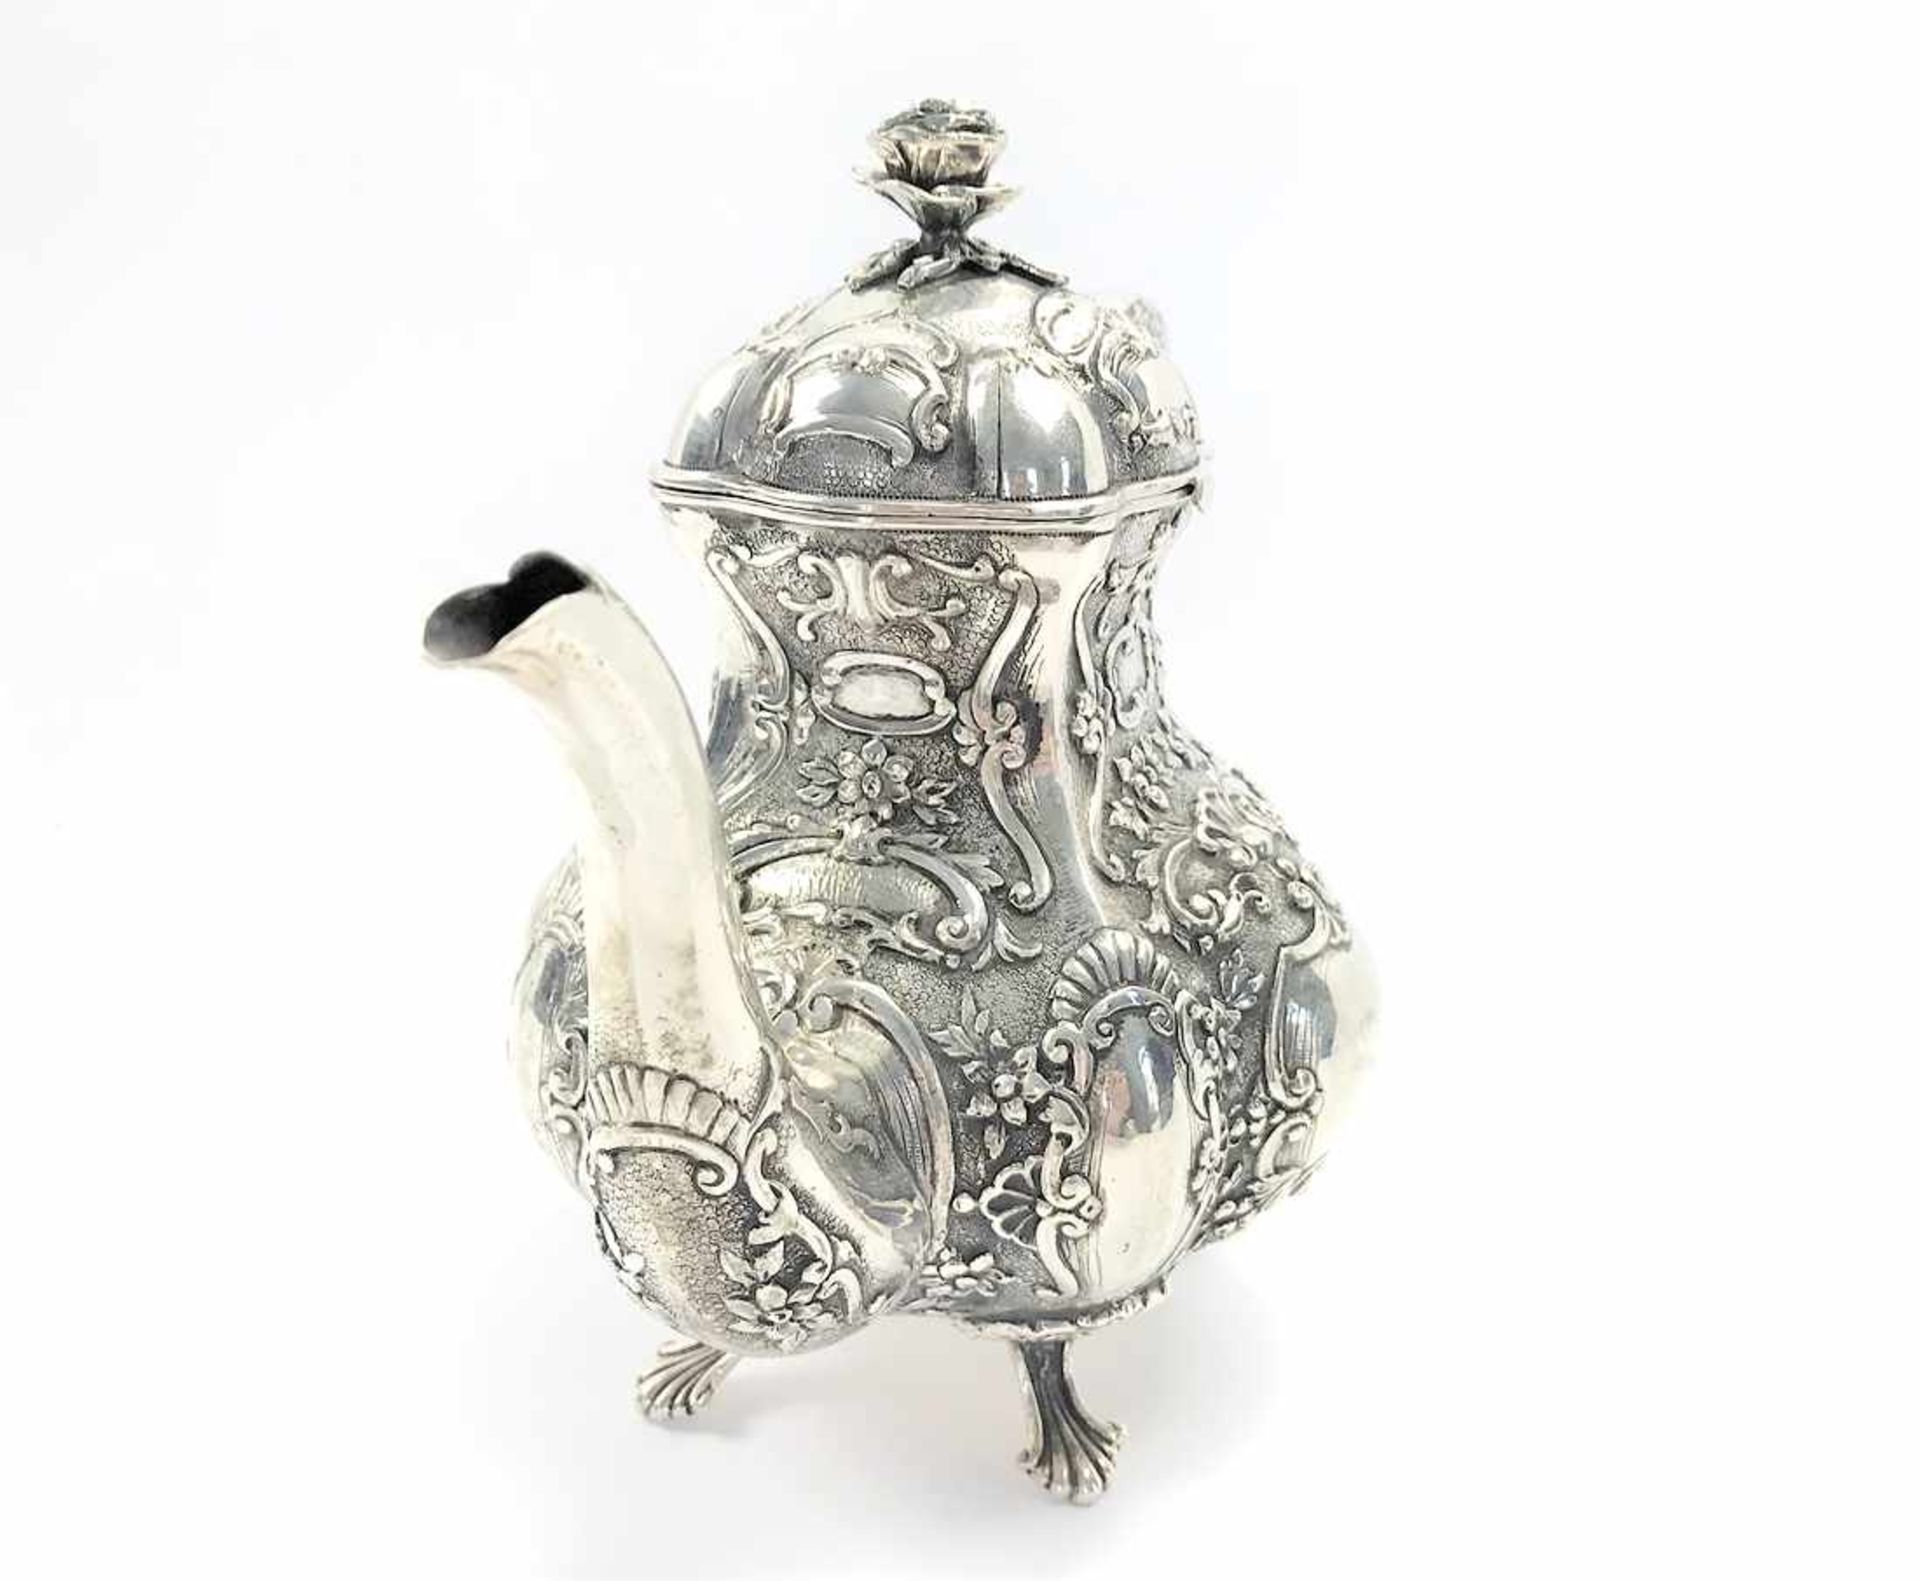 Kaffee- oder Teekanne mit reichem, reliefierten floralen Dekor in 830er Silber, leere - Bild 5 aus 16